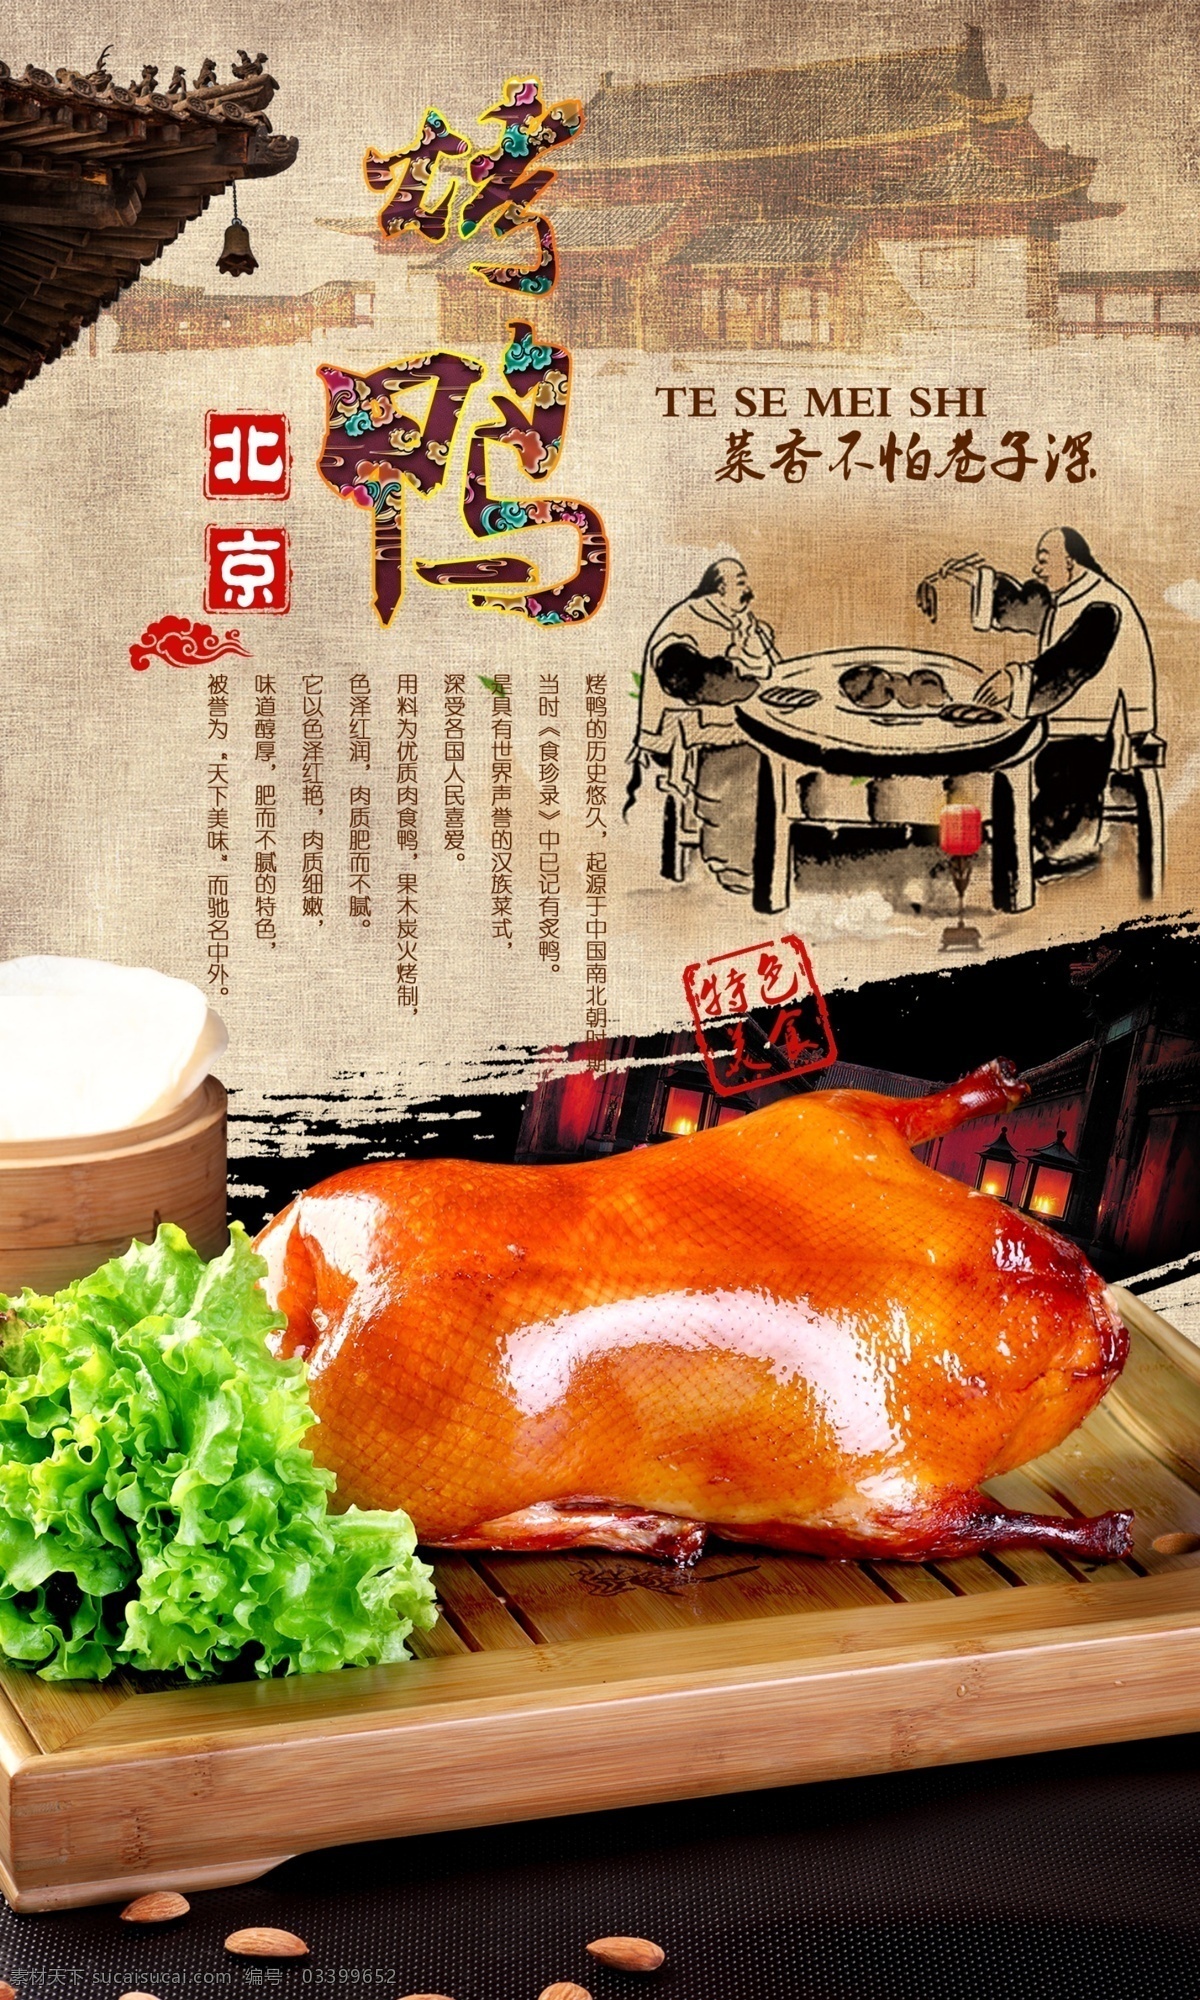 烤鸭海报 北京烤鸭 烤鸭 烤鸭展板 烤鸭图片 海报